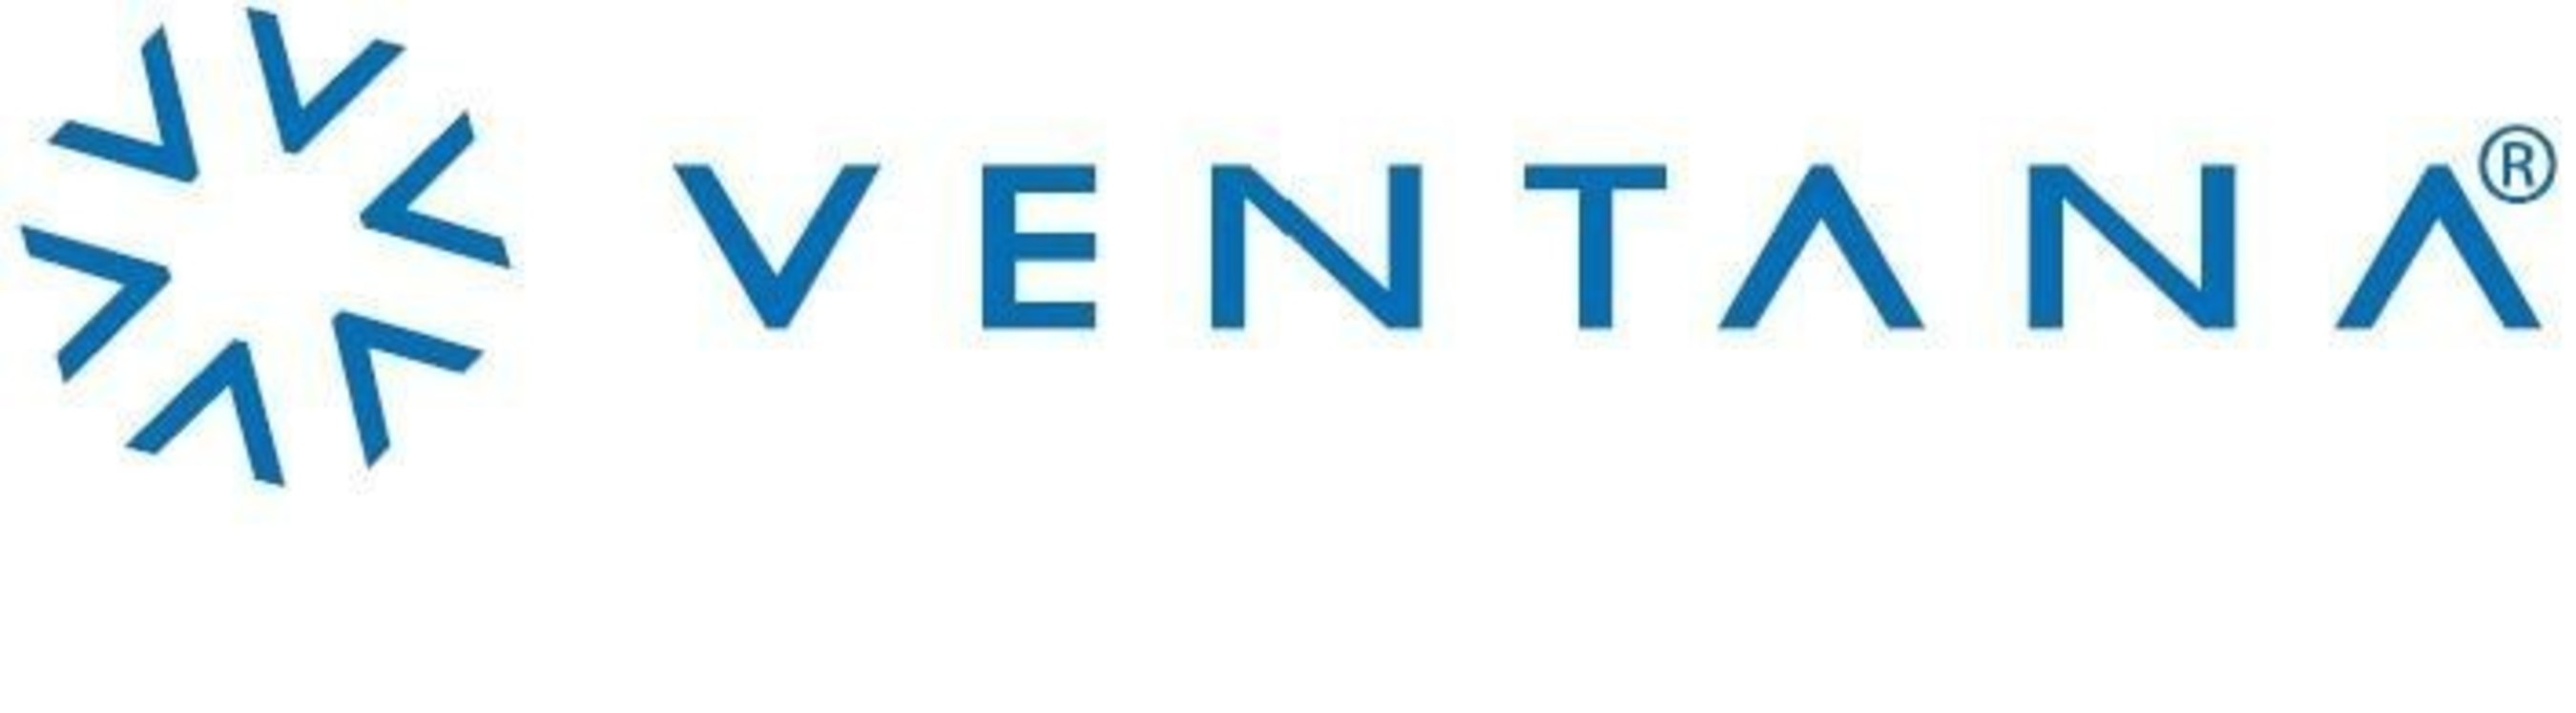 Ventana Medical Systems, Inc. logo